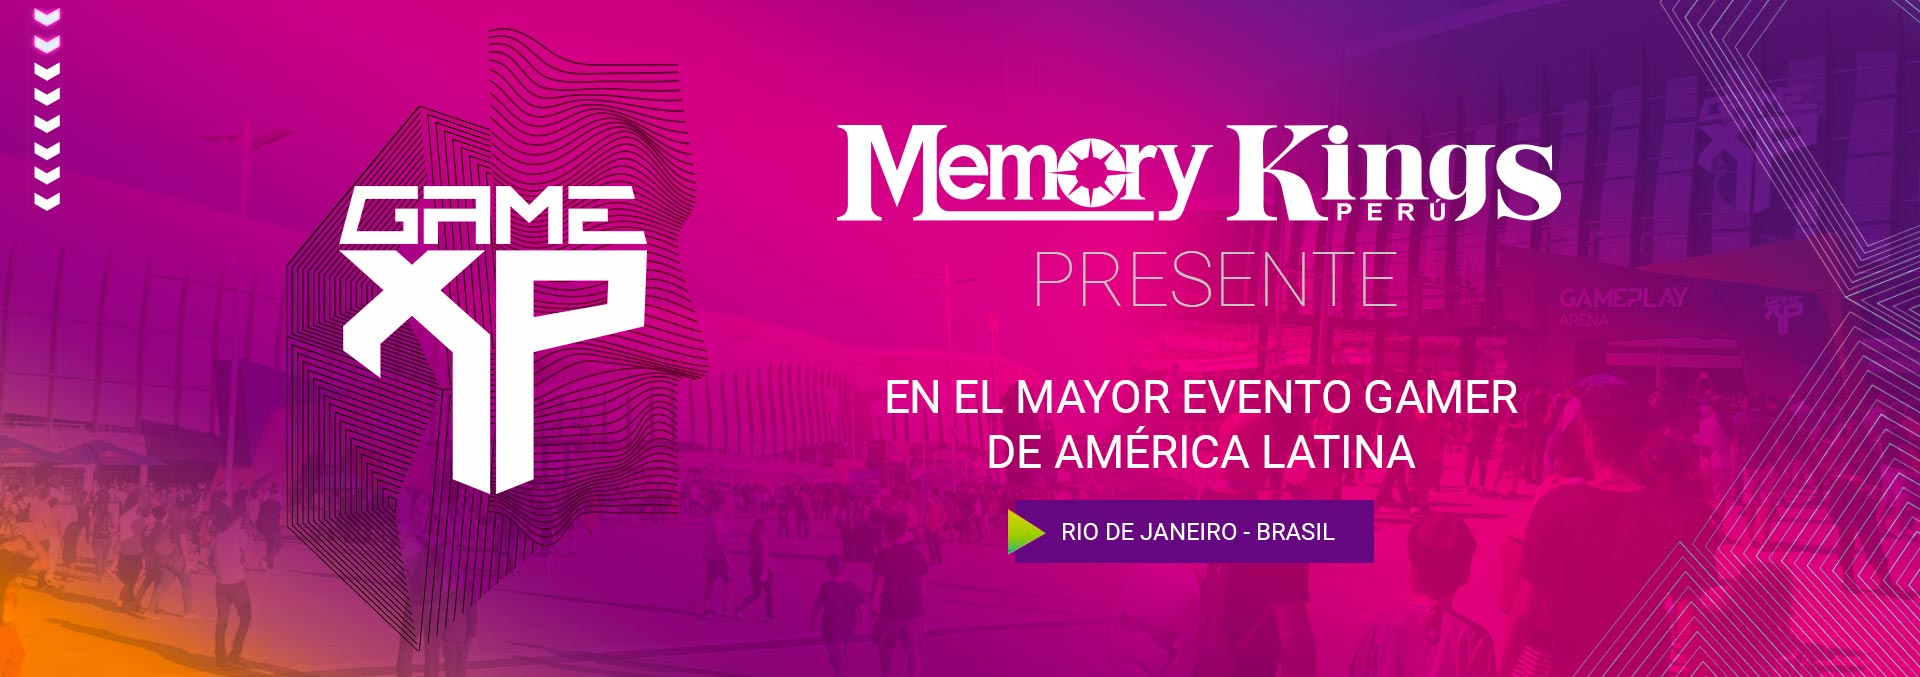 MEMORY KINGS EN EL EVENTO GAMER MAS GRANDE DE AMERICA LATINA GAME XP - RIO DE JANEIRO BRASIL